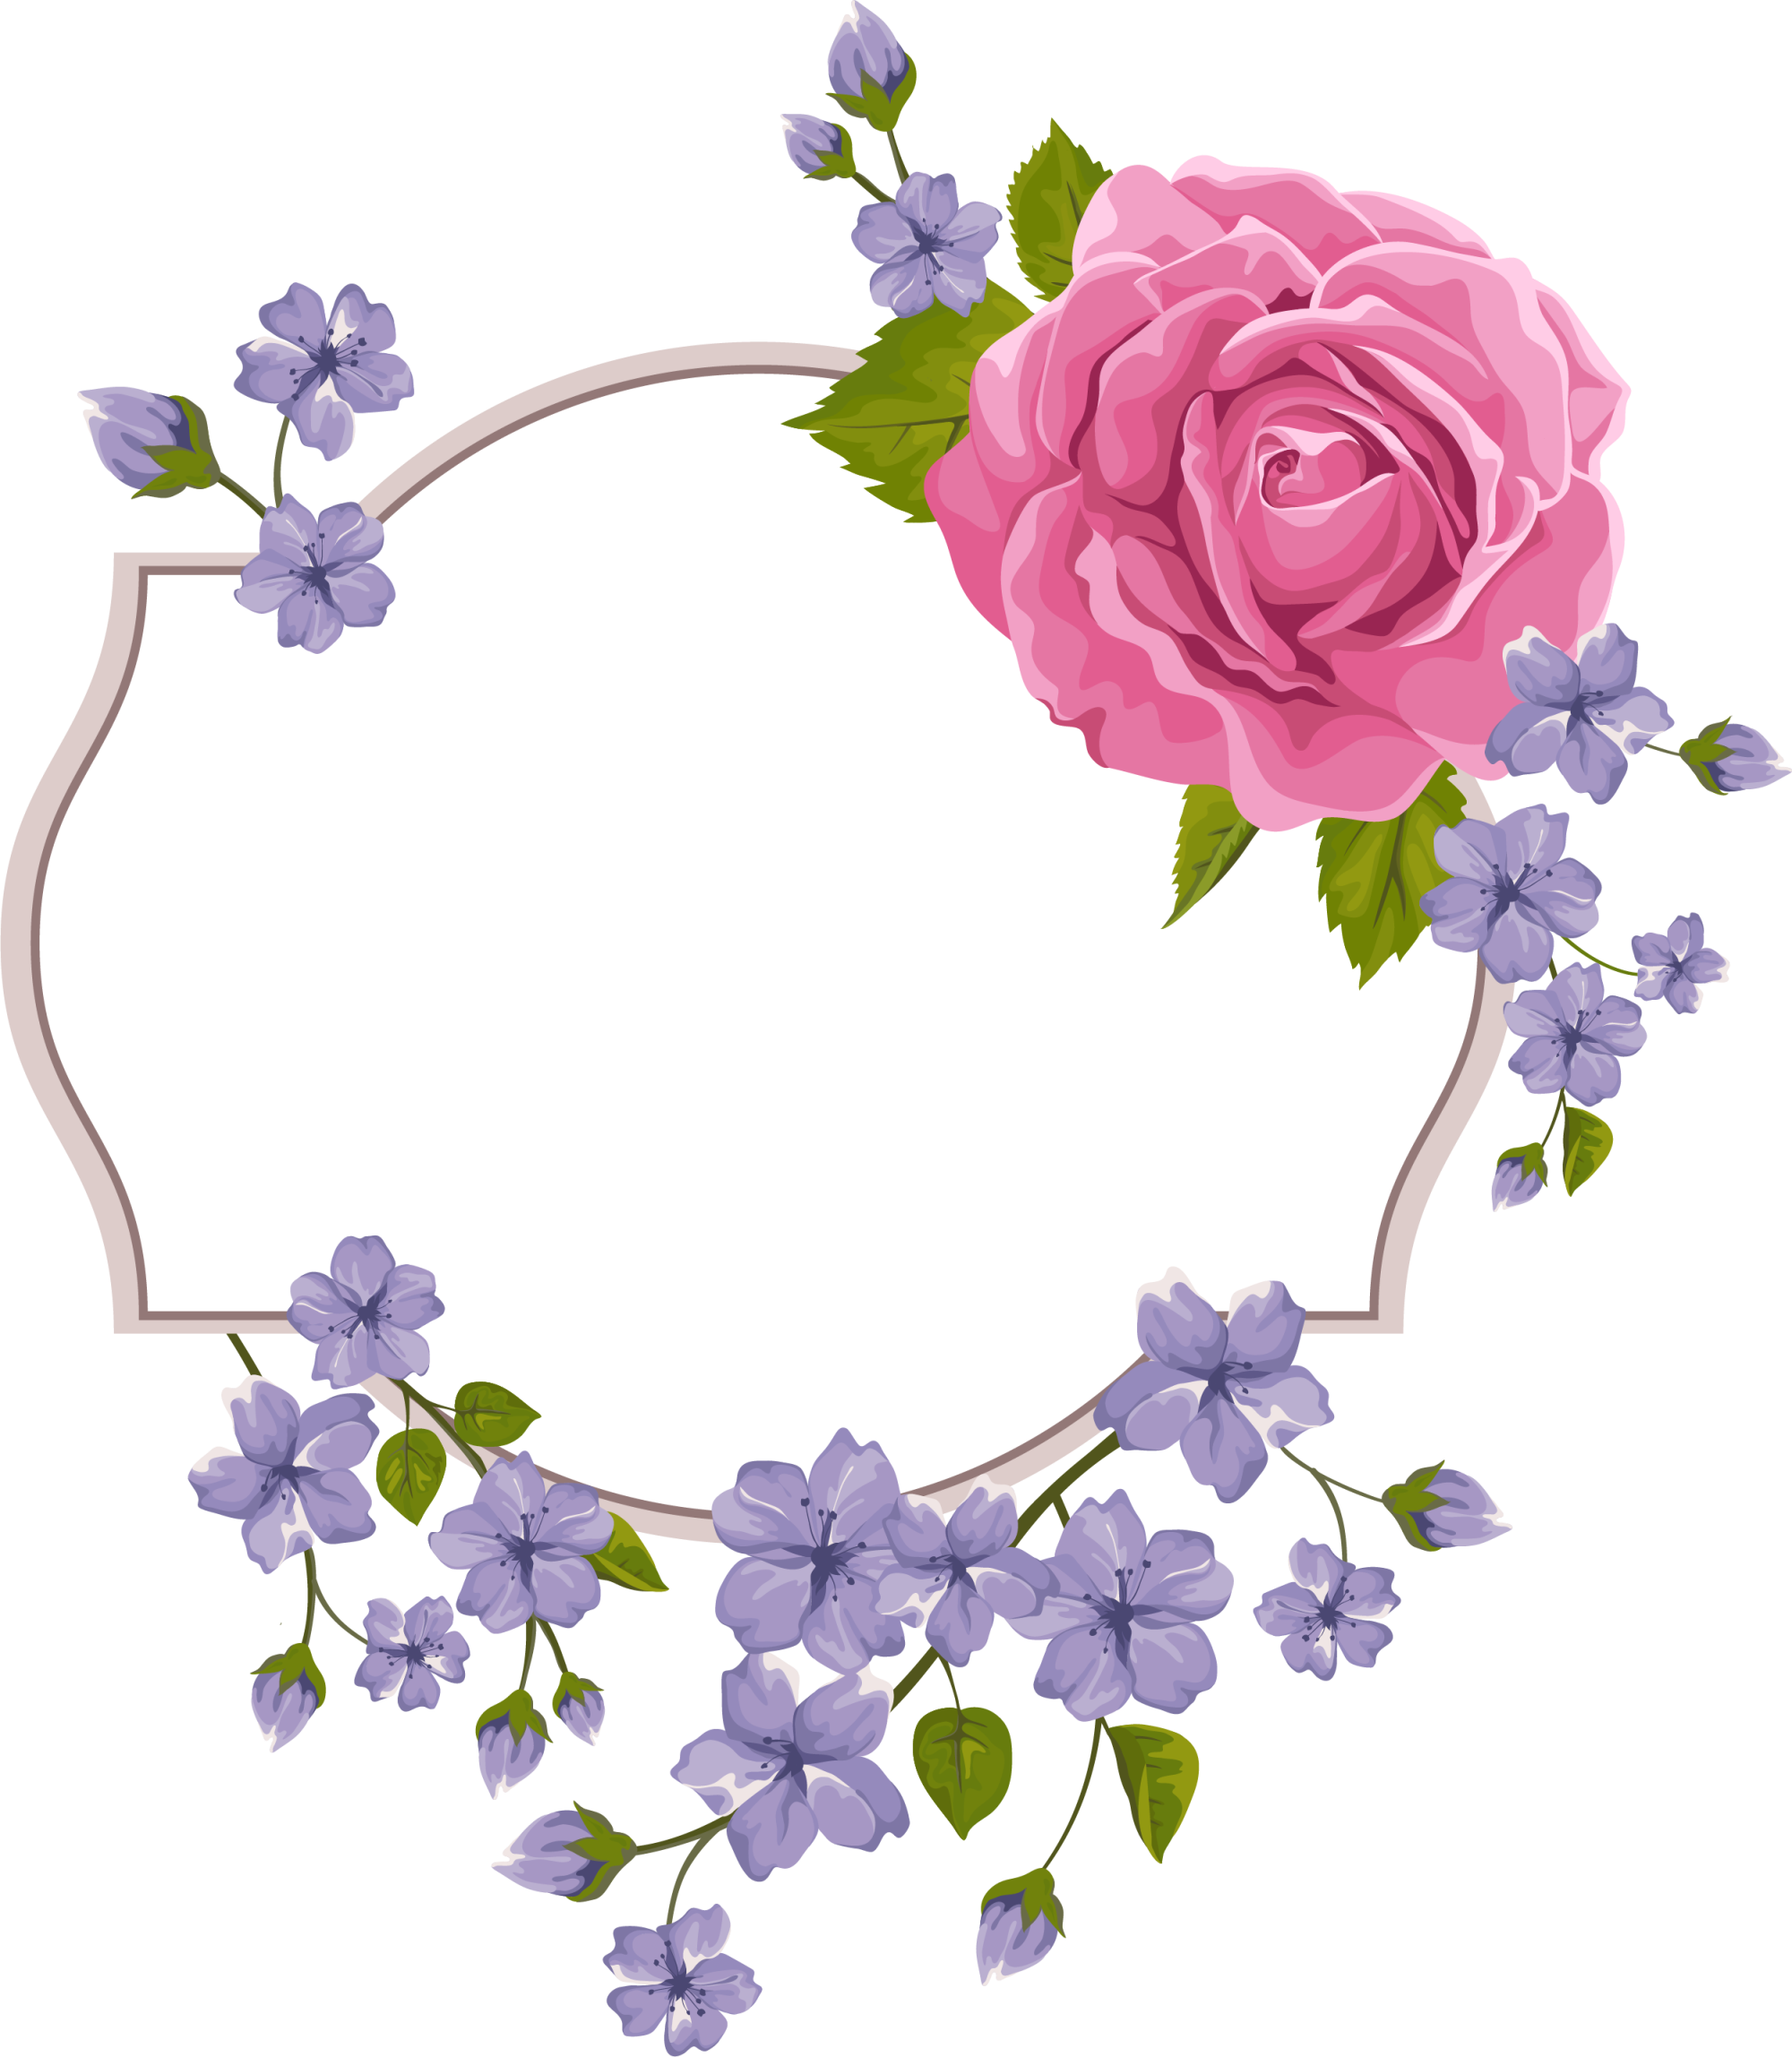 download-flower-purple-frame-violet-invitation-wedding-hq-png-image